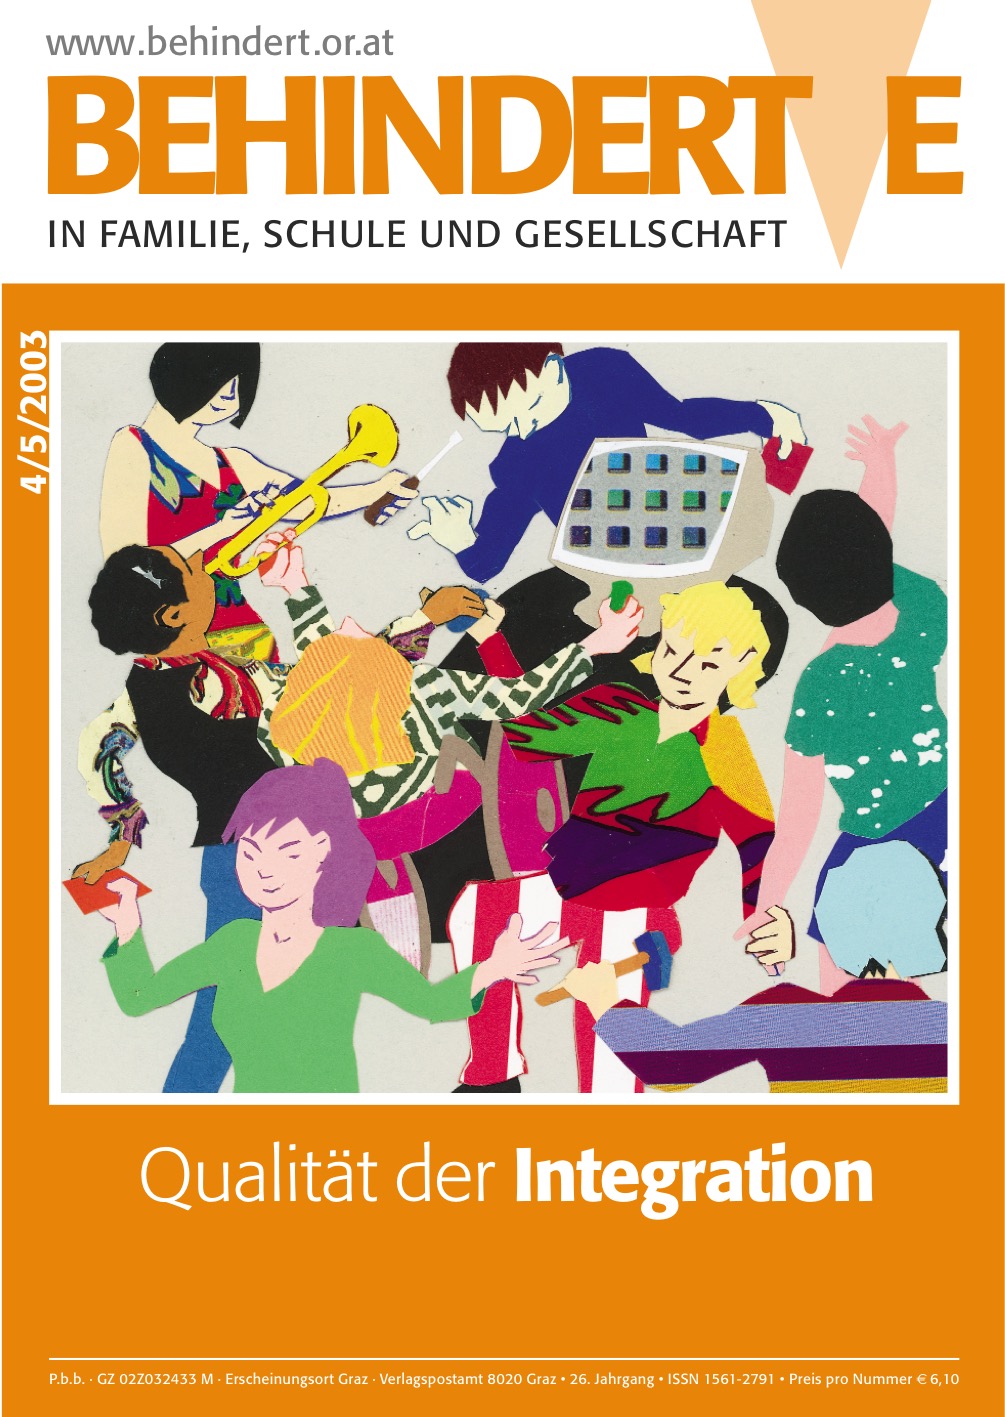 Titelbild der Zeitschrift BEHINDERTE MENSCHEN, Ausgabe 4/5/2003 "Qualität der Integration"